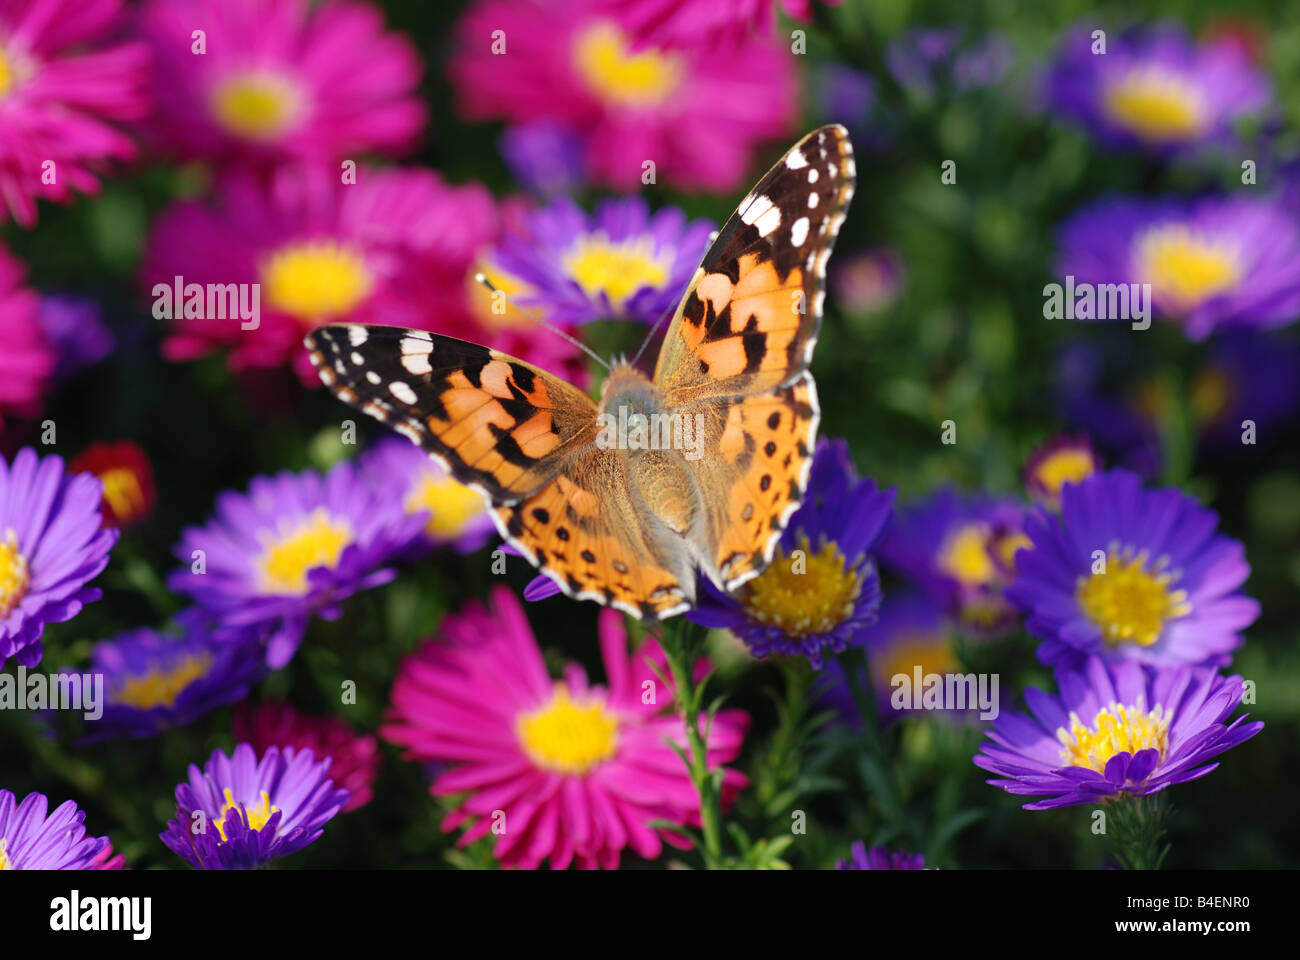 beautiful butterfly on purple flower Stock Photo